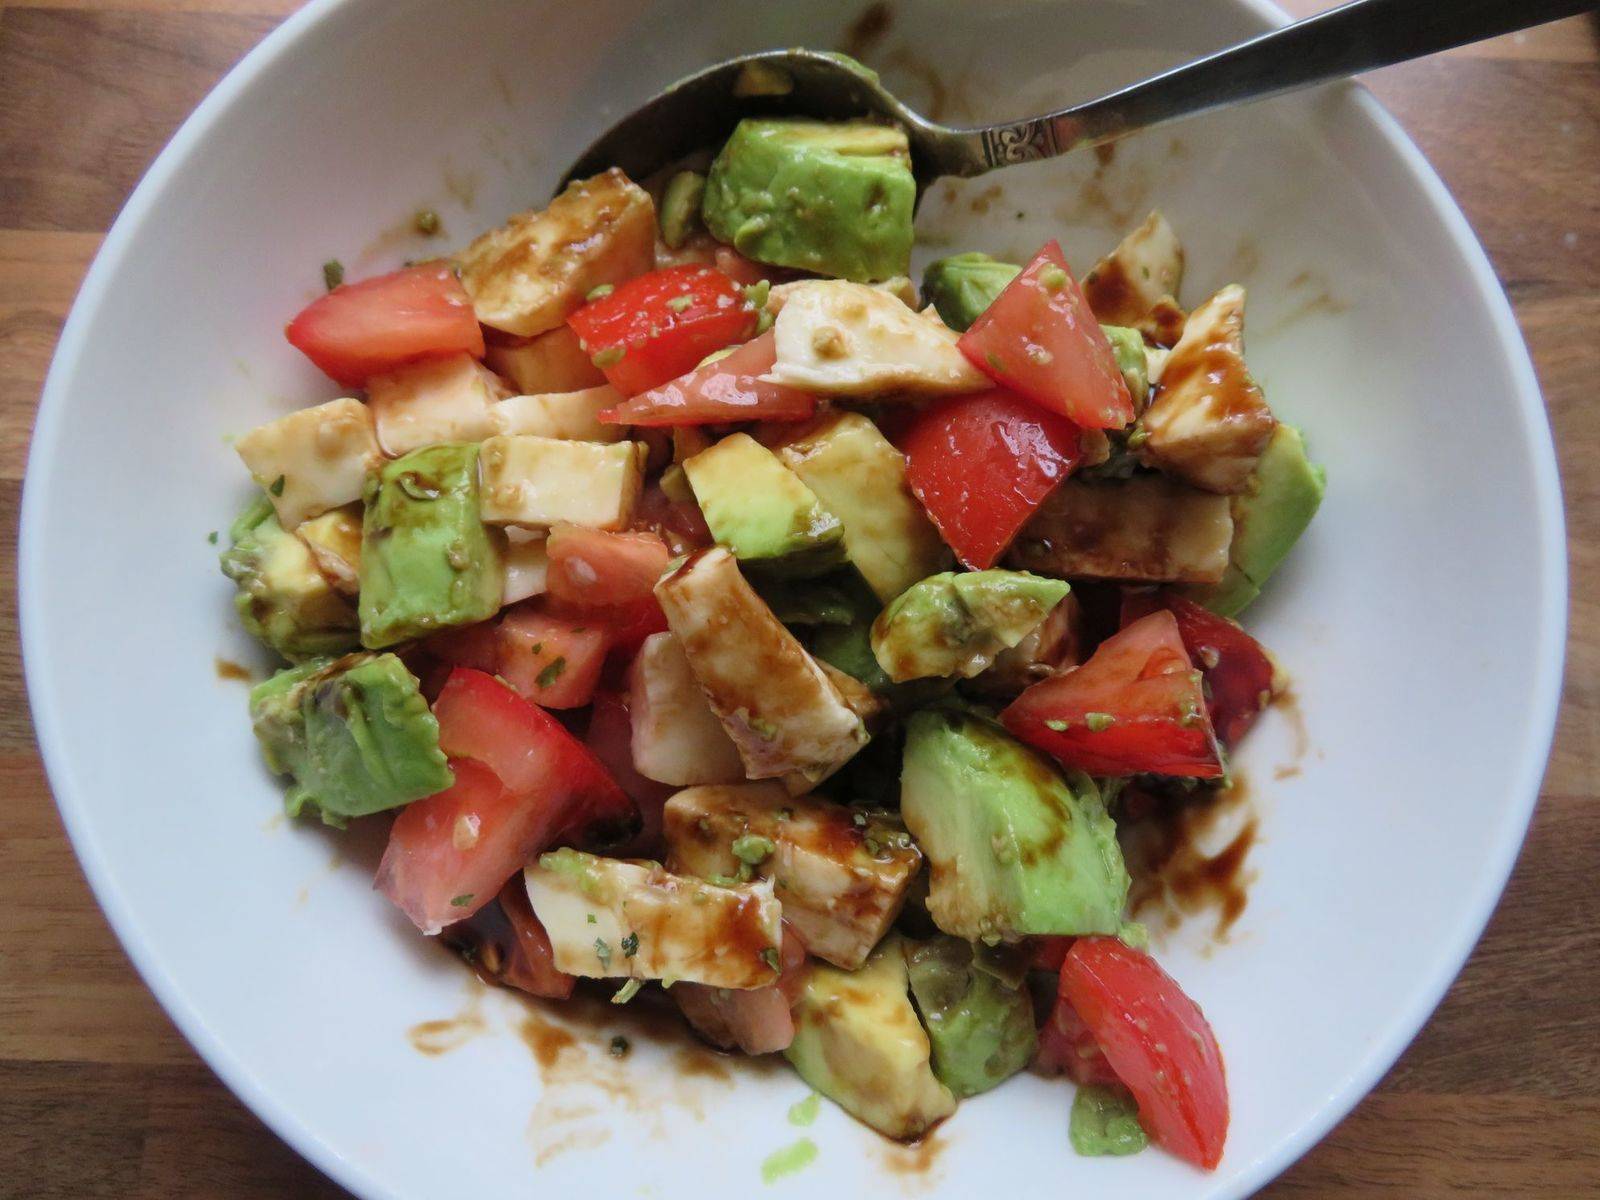 Tomaten-Mozzarella Salat mit Avocado